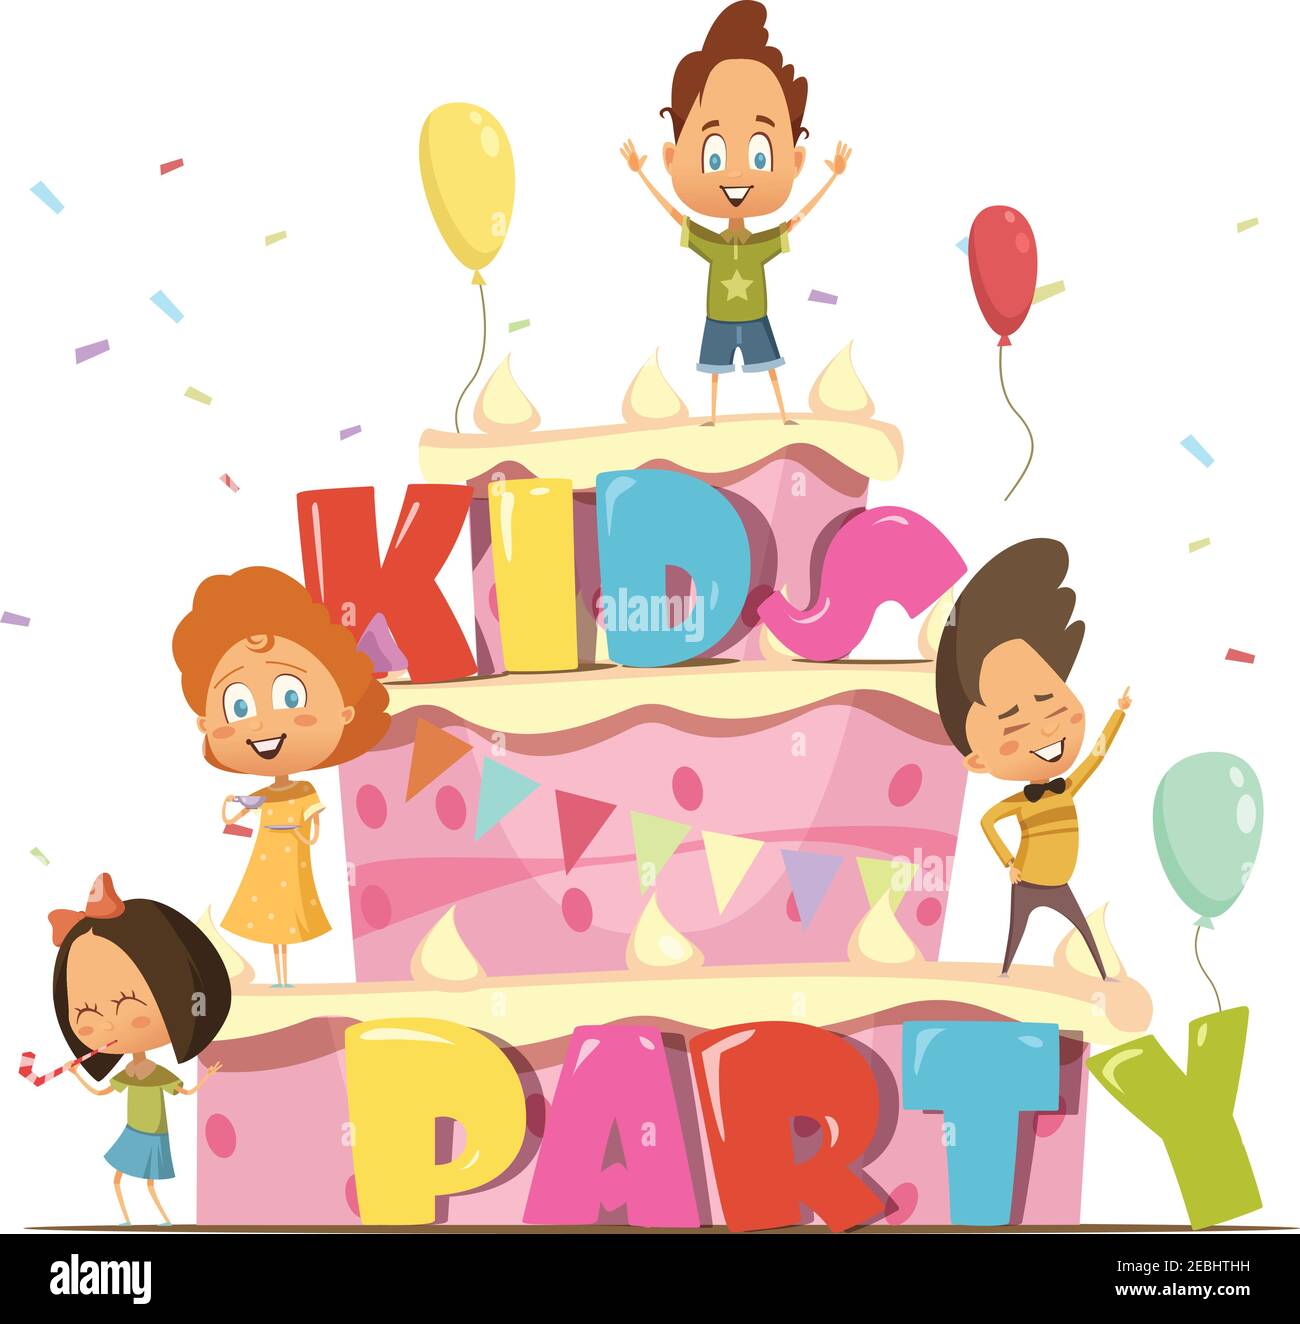 Kids Party flache Design-Vorlage für Kinder mit riesigen Kuchen Und Gruppe von Cartoon-Persönlichkeiten Retro-Vektor-Illustration Stock Vektor